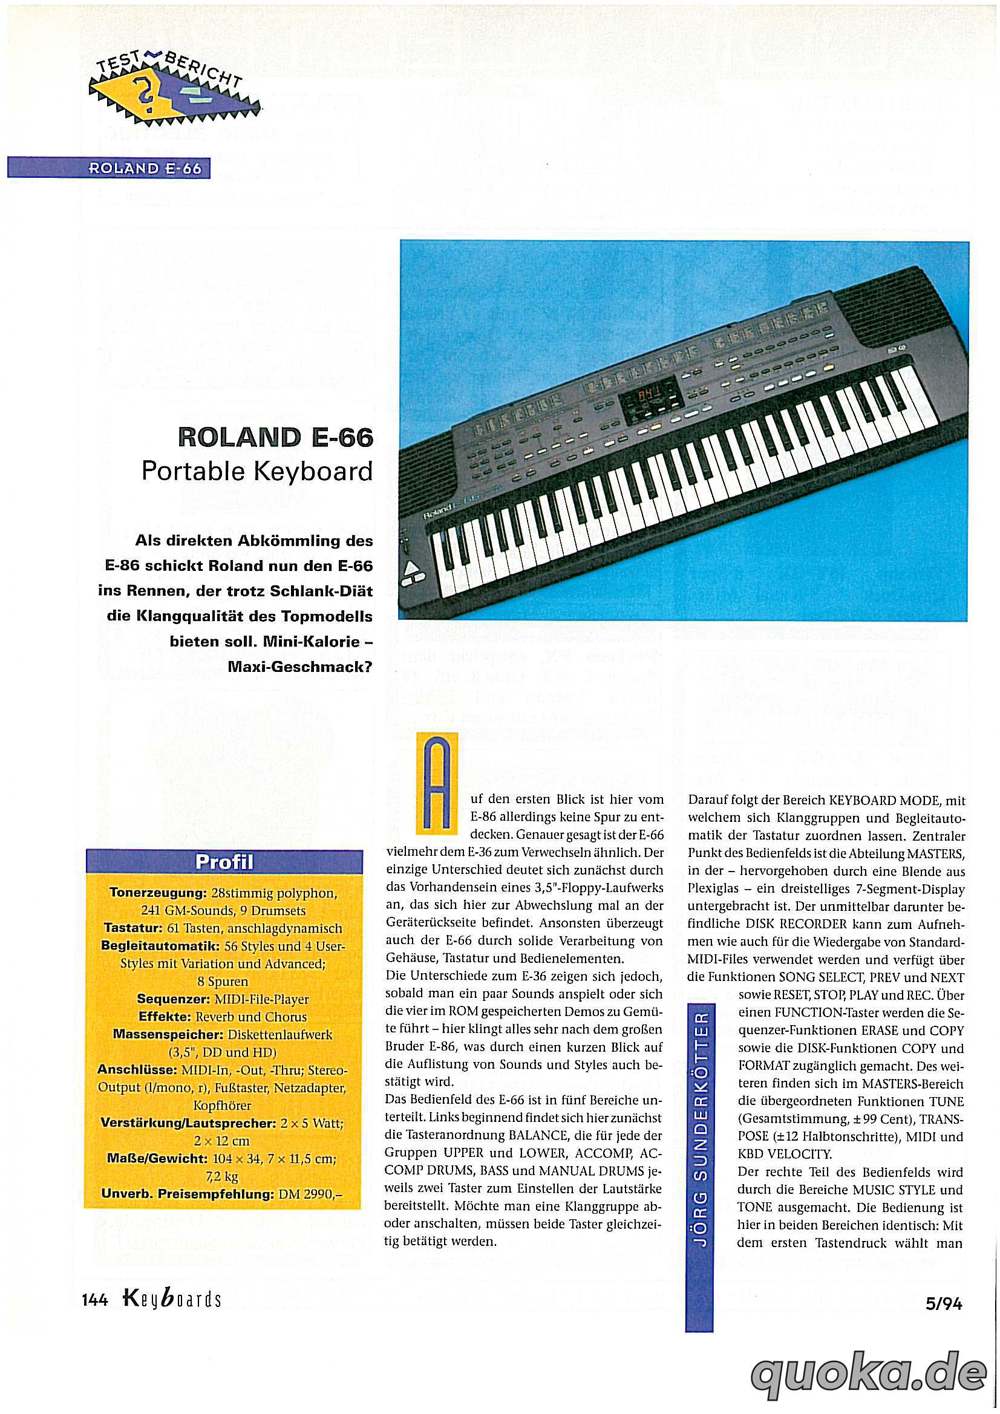 Keyboard Roland E-66